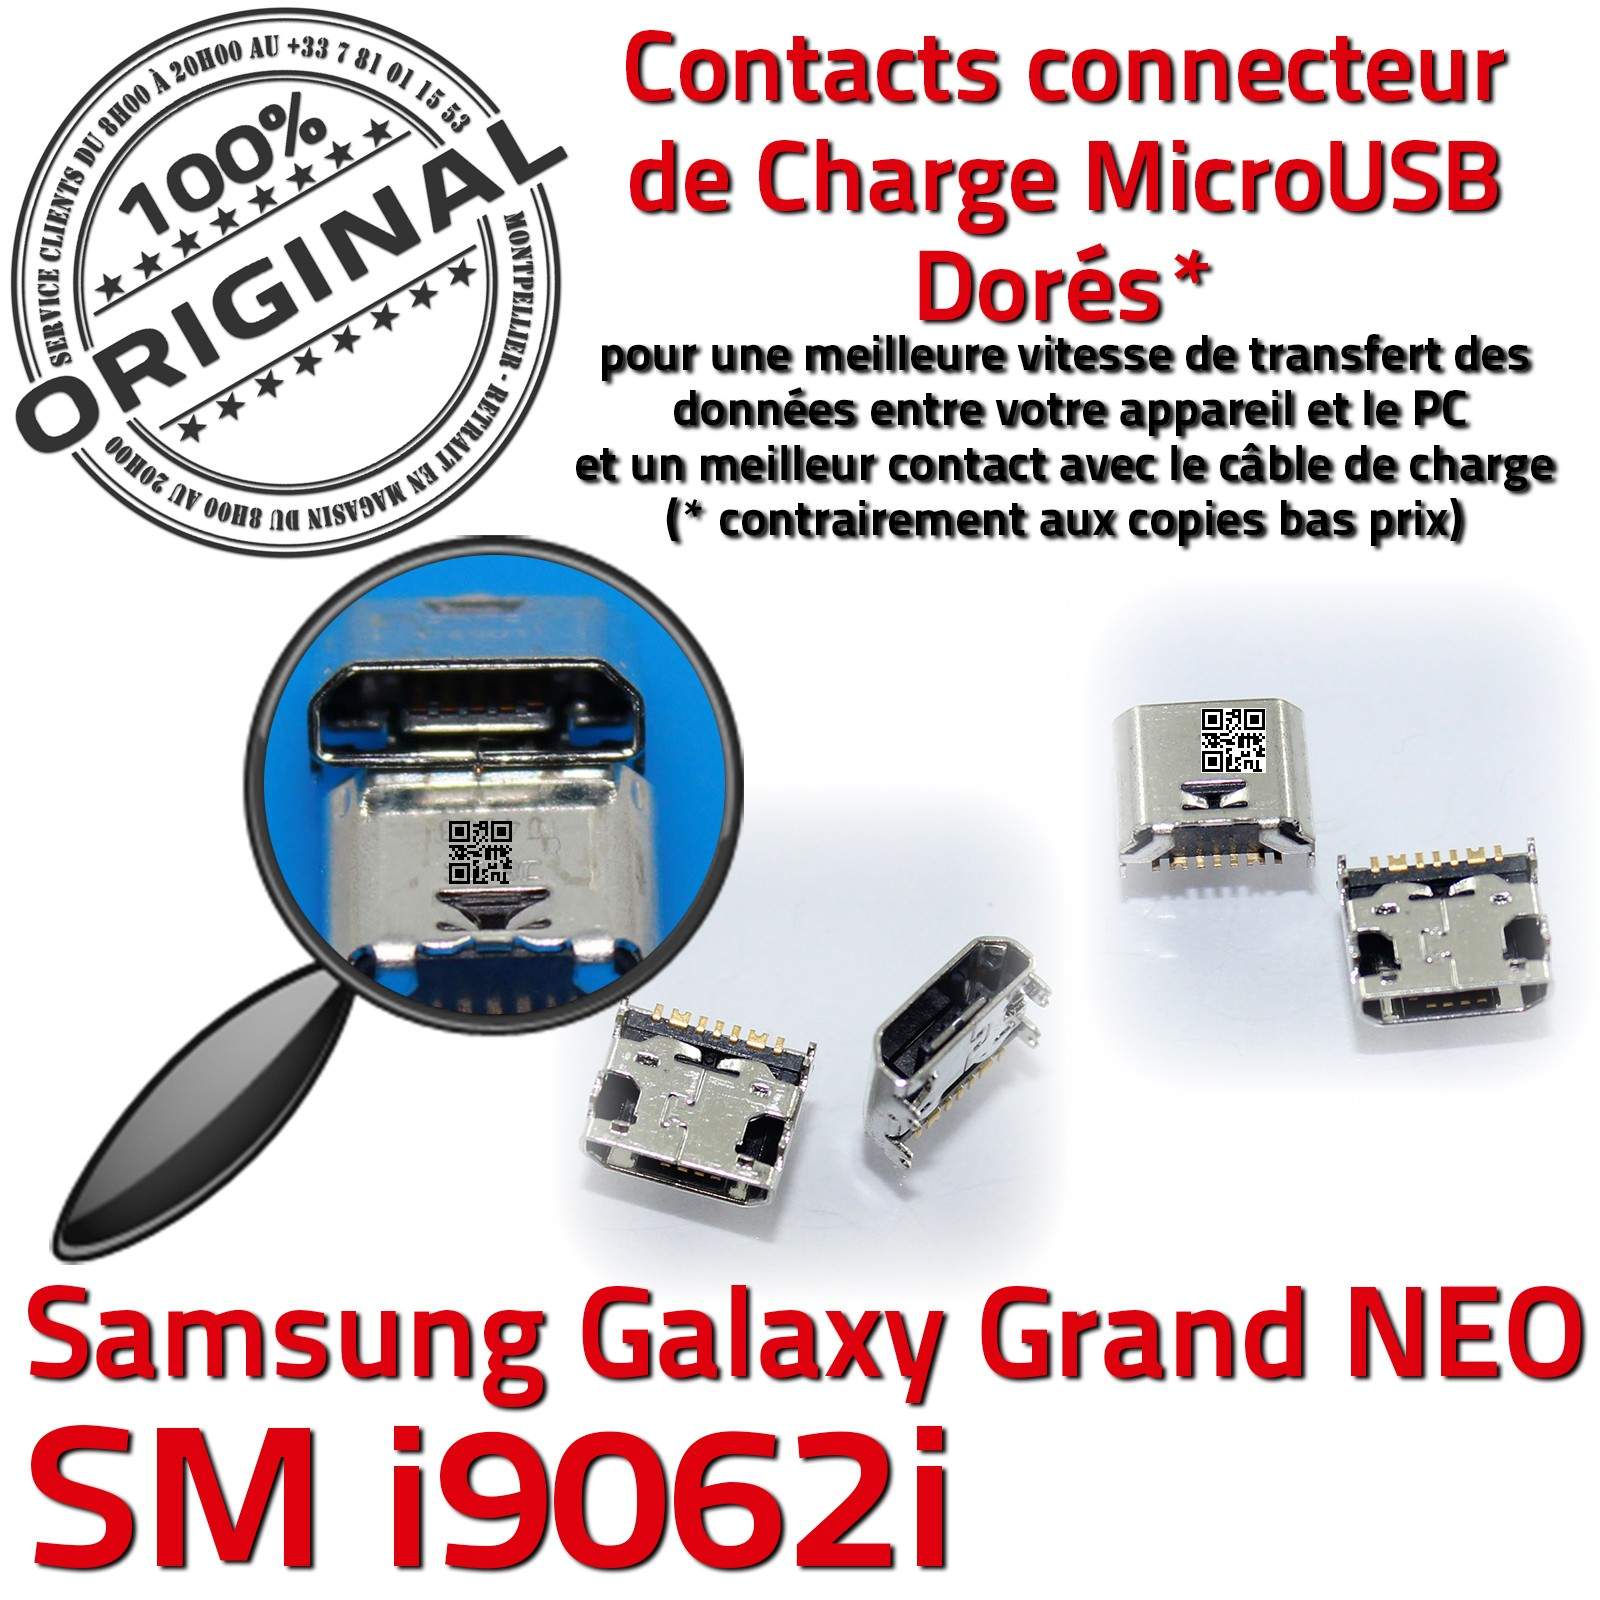 ORIGINAL Samsung Galaxy Grand NEO GT i9062i Connecteur charge à souder Micro USB Pin Doré Dock Prise Connector Chargeur Qualité